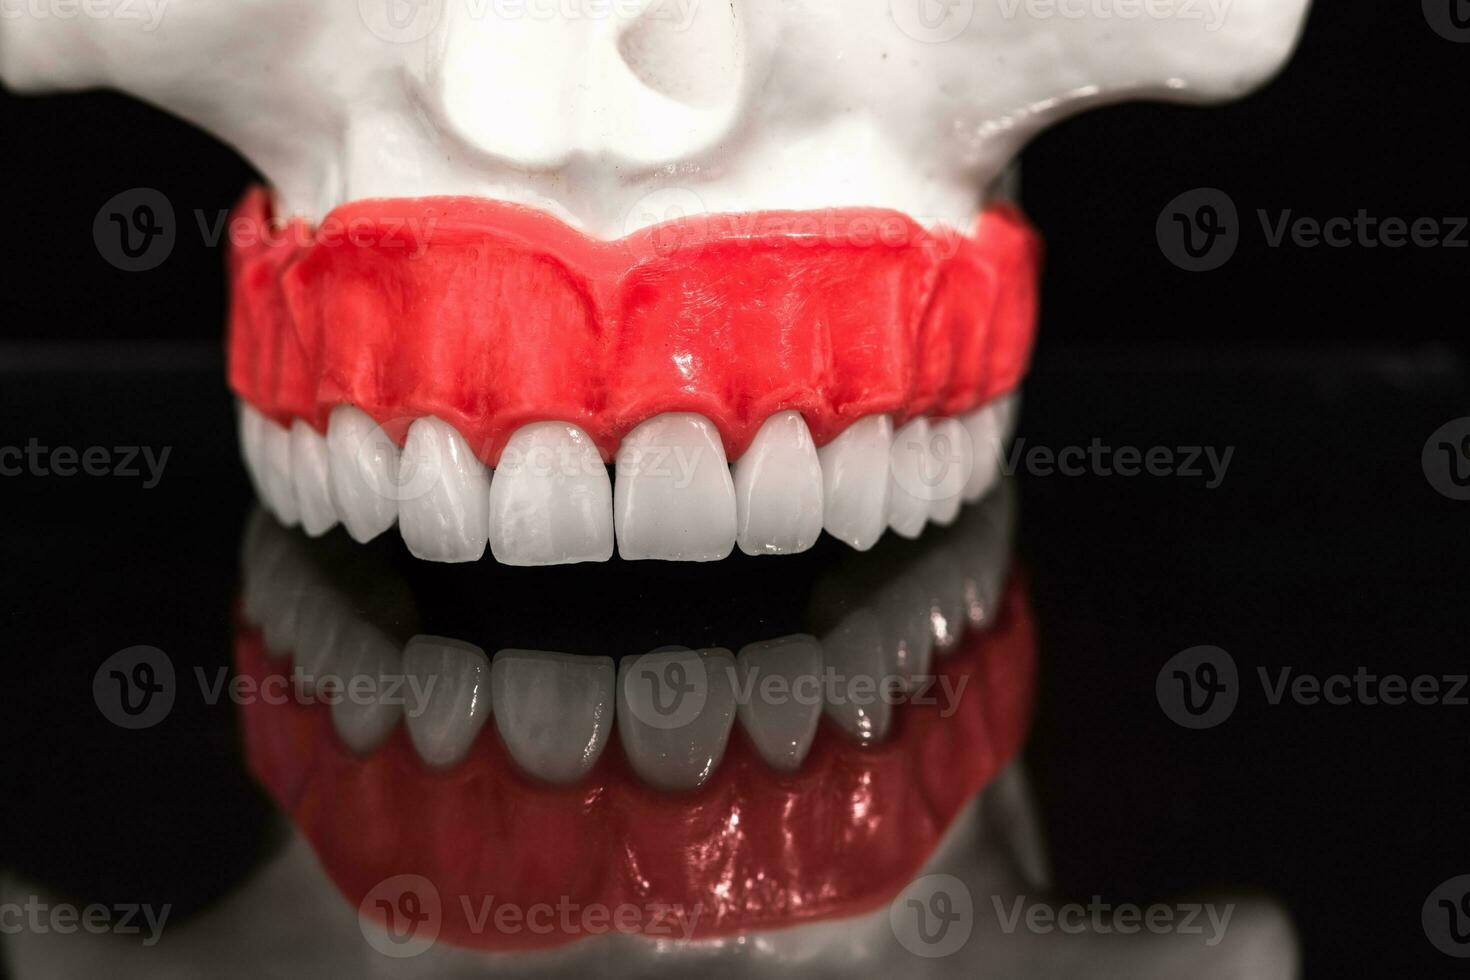 lägre mänsklig käke med tänder anatomi modell isolerat på svart bakgrund. friska tänder, dental vård och ortodontisk medicinsk begrepp. foto